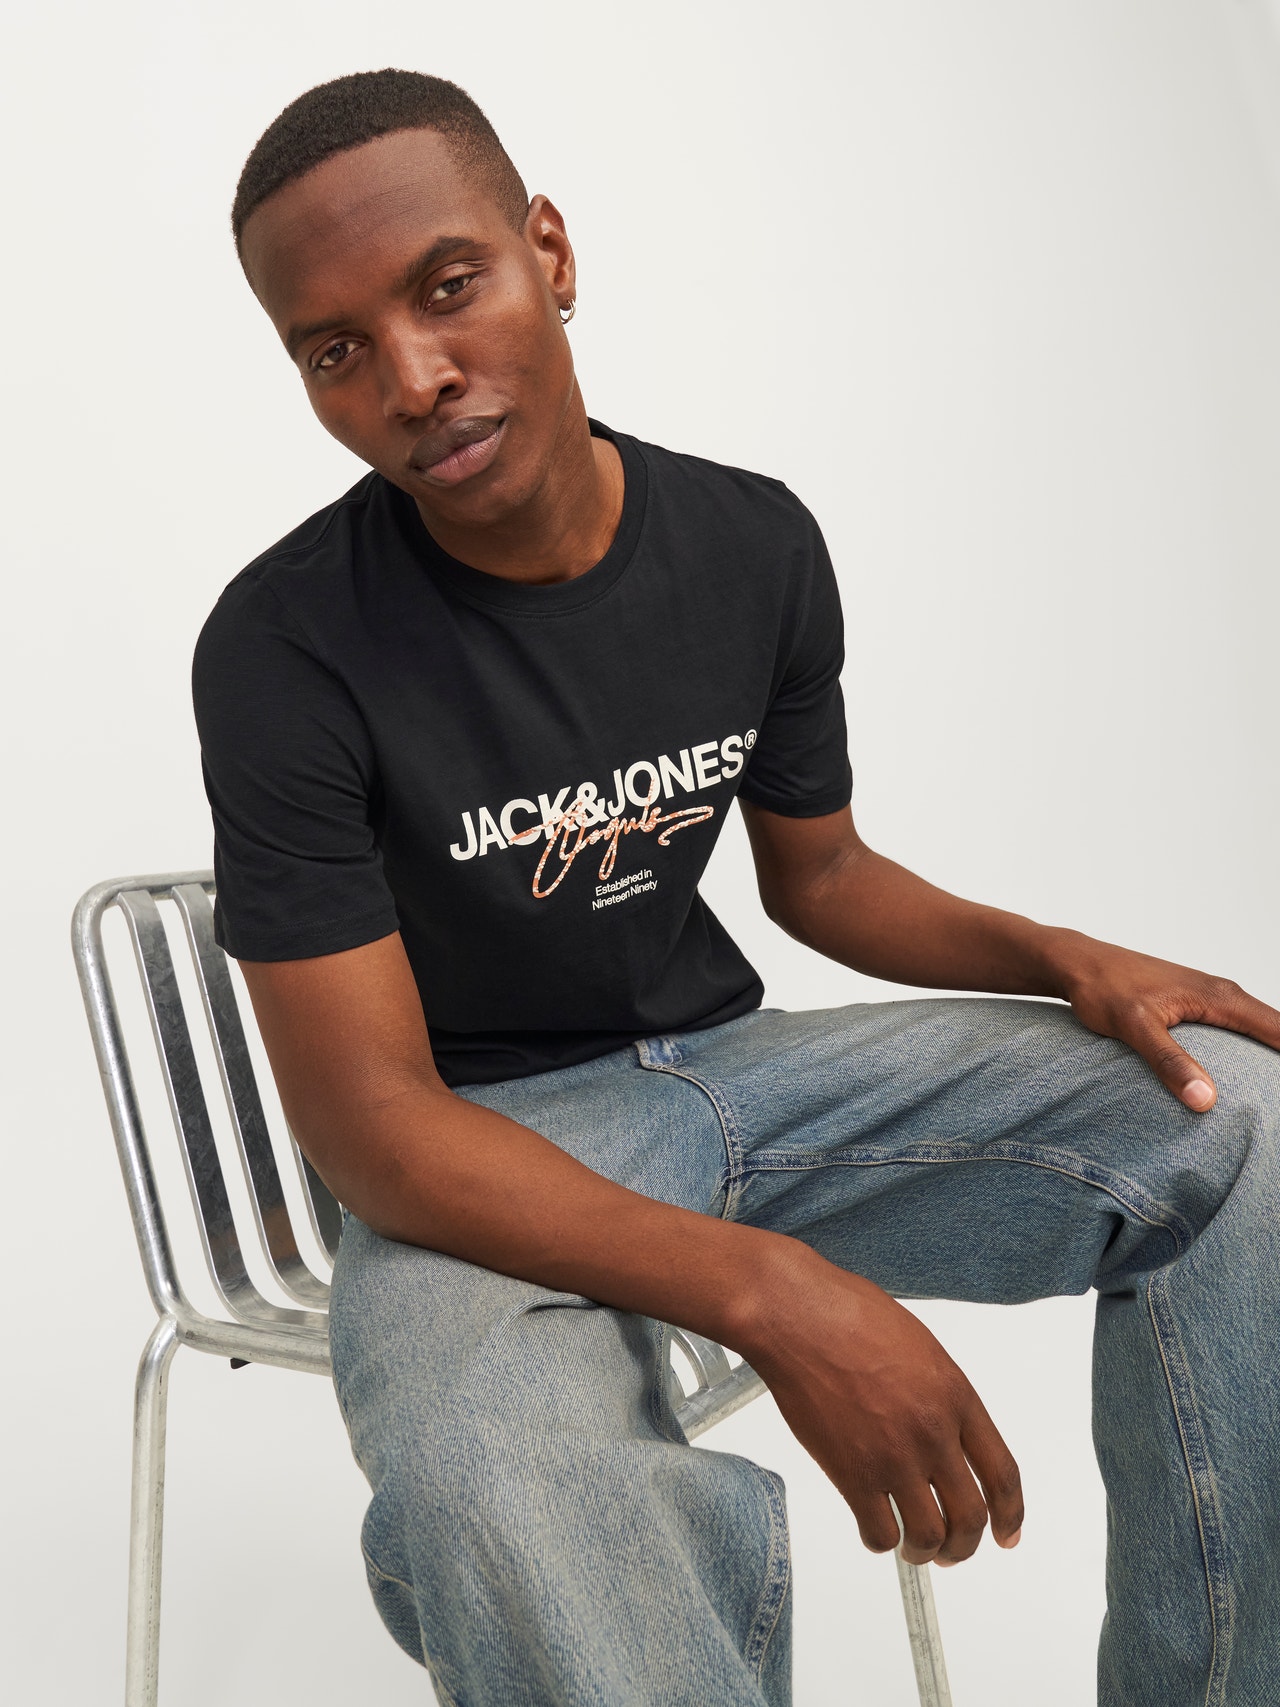 Jack & Jones Gedruckt Rundhals T-shirt -Black - 12255452